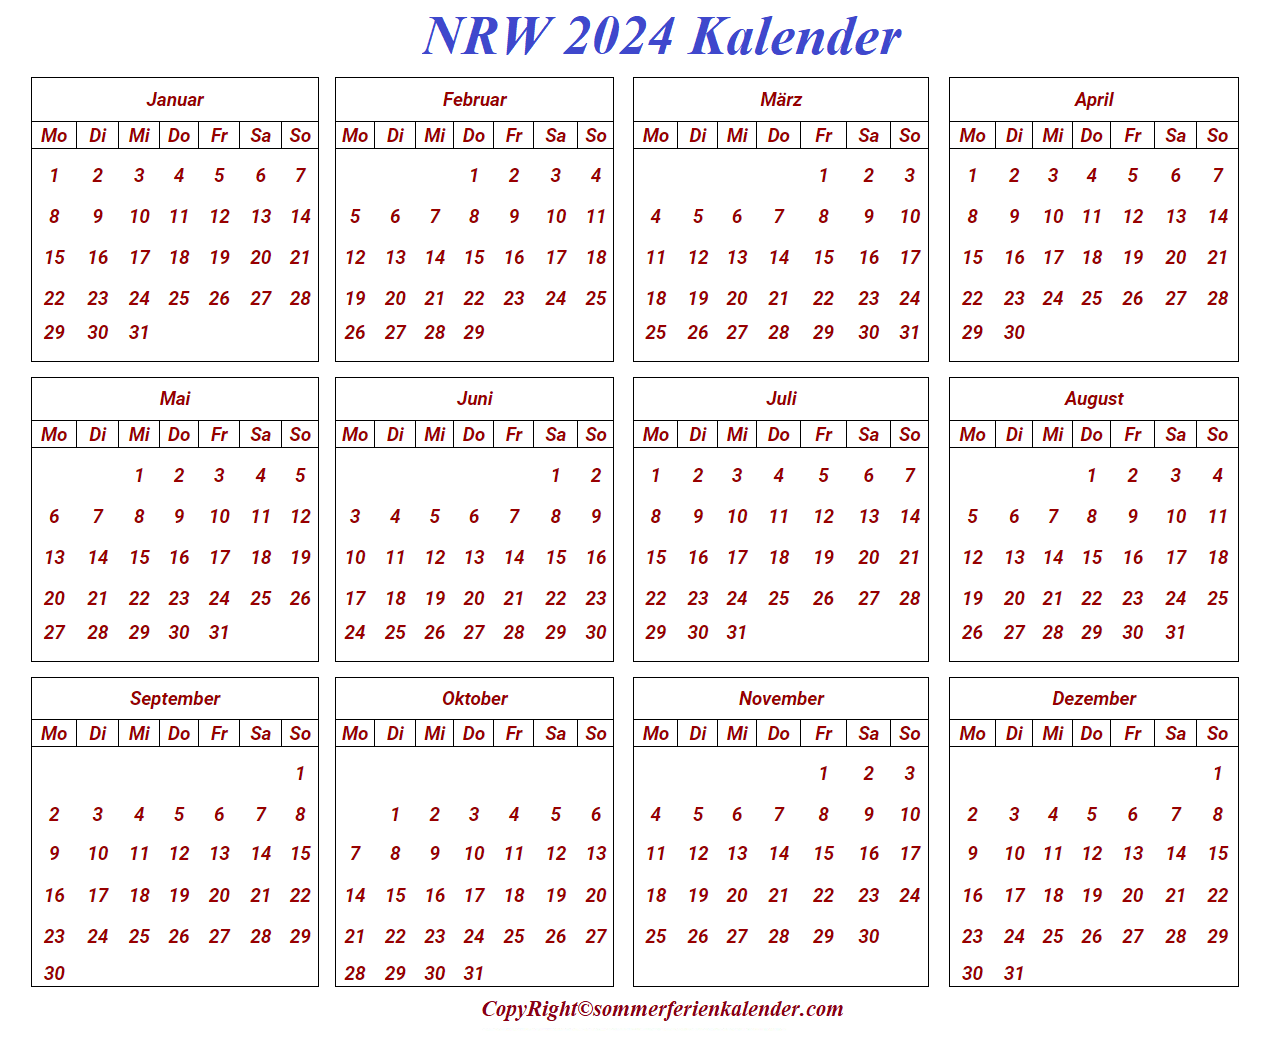 Kalender NRW 2024 Zum Ausdrucken